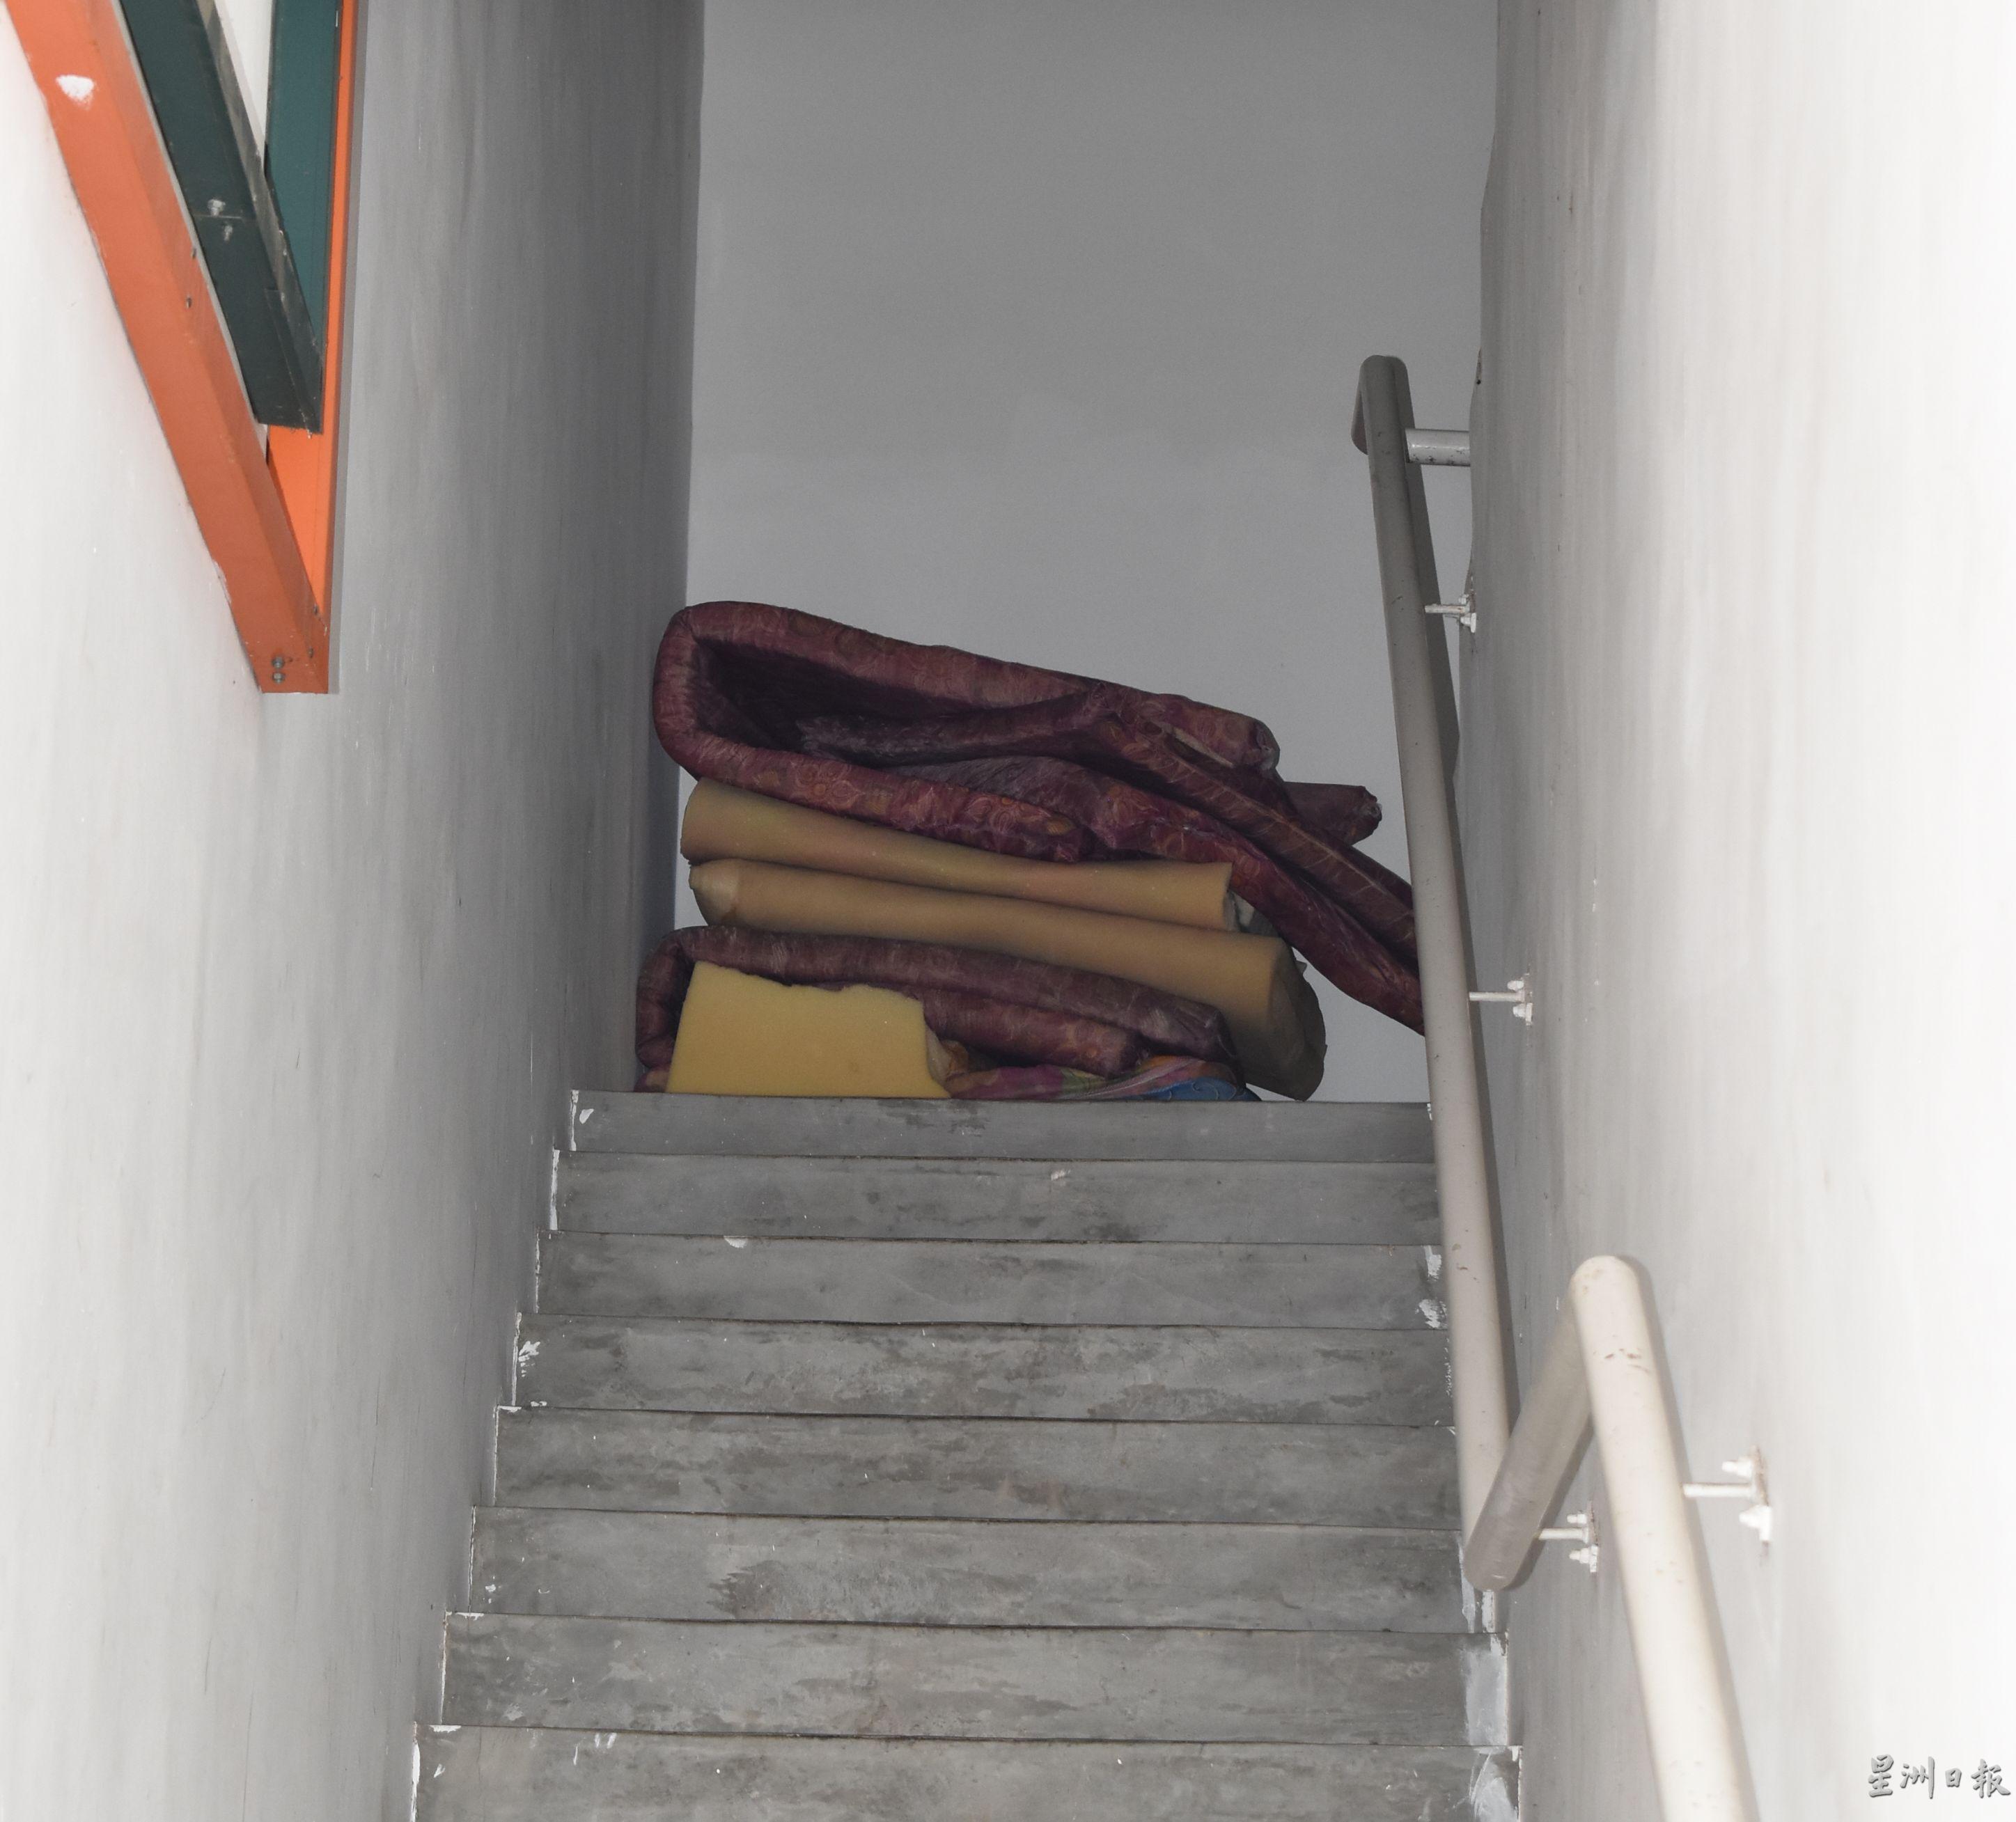 通往楼上外劳宿舍的楼梯间，也堆放许多床褥。